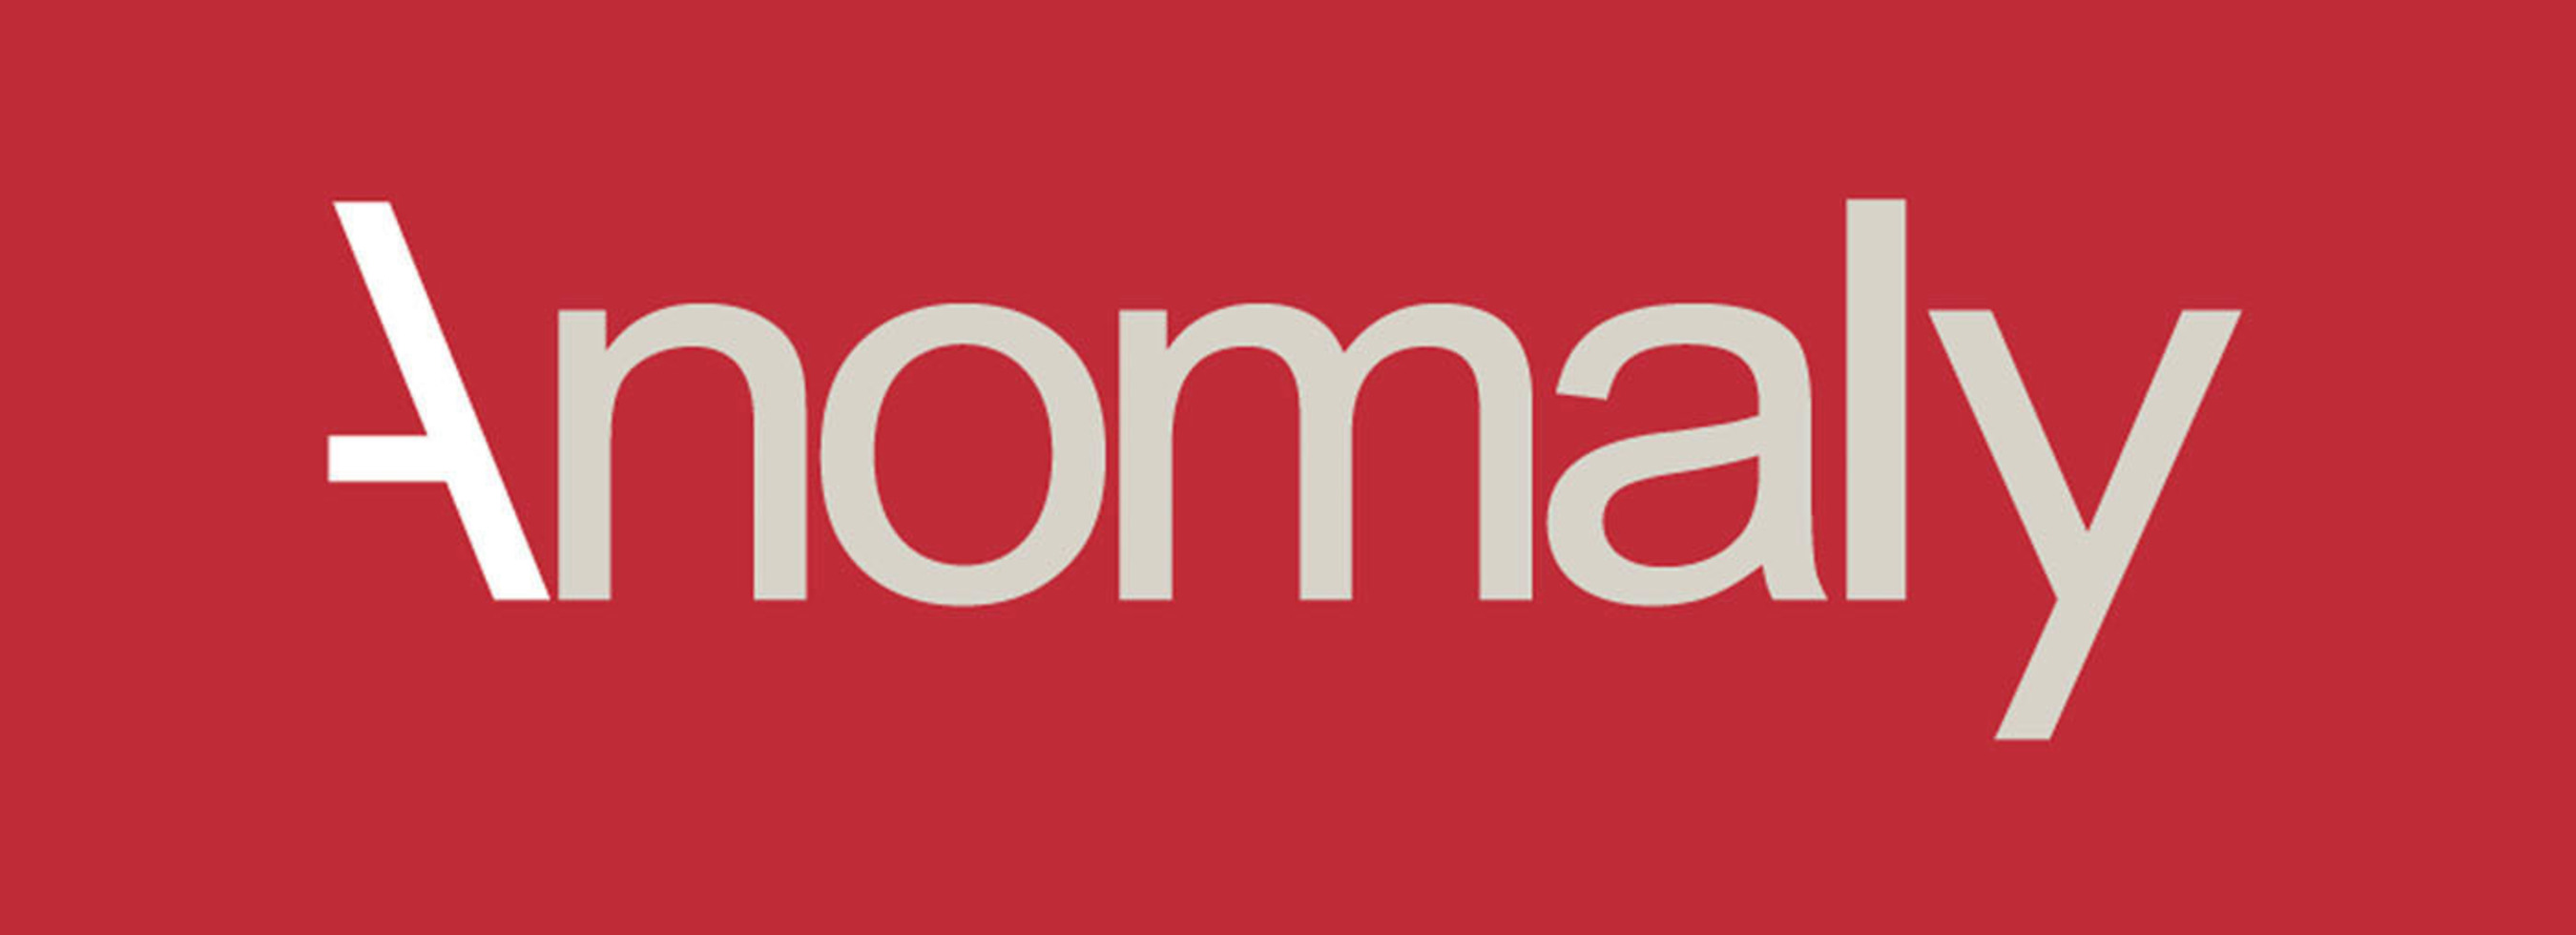 Anomaly logo. (PRNewsFoto/Anomaly) (PRNewsFoto/)